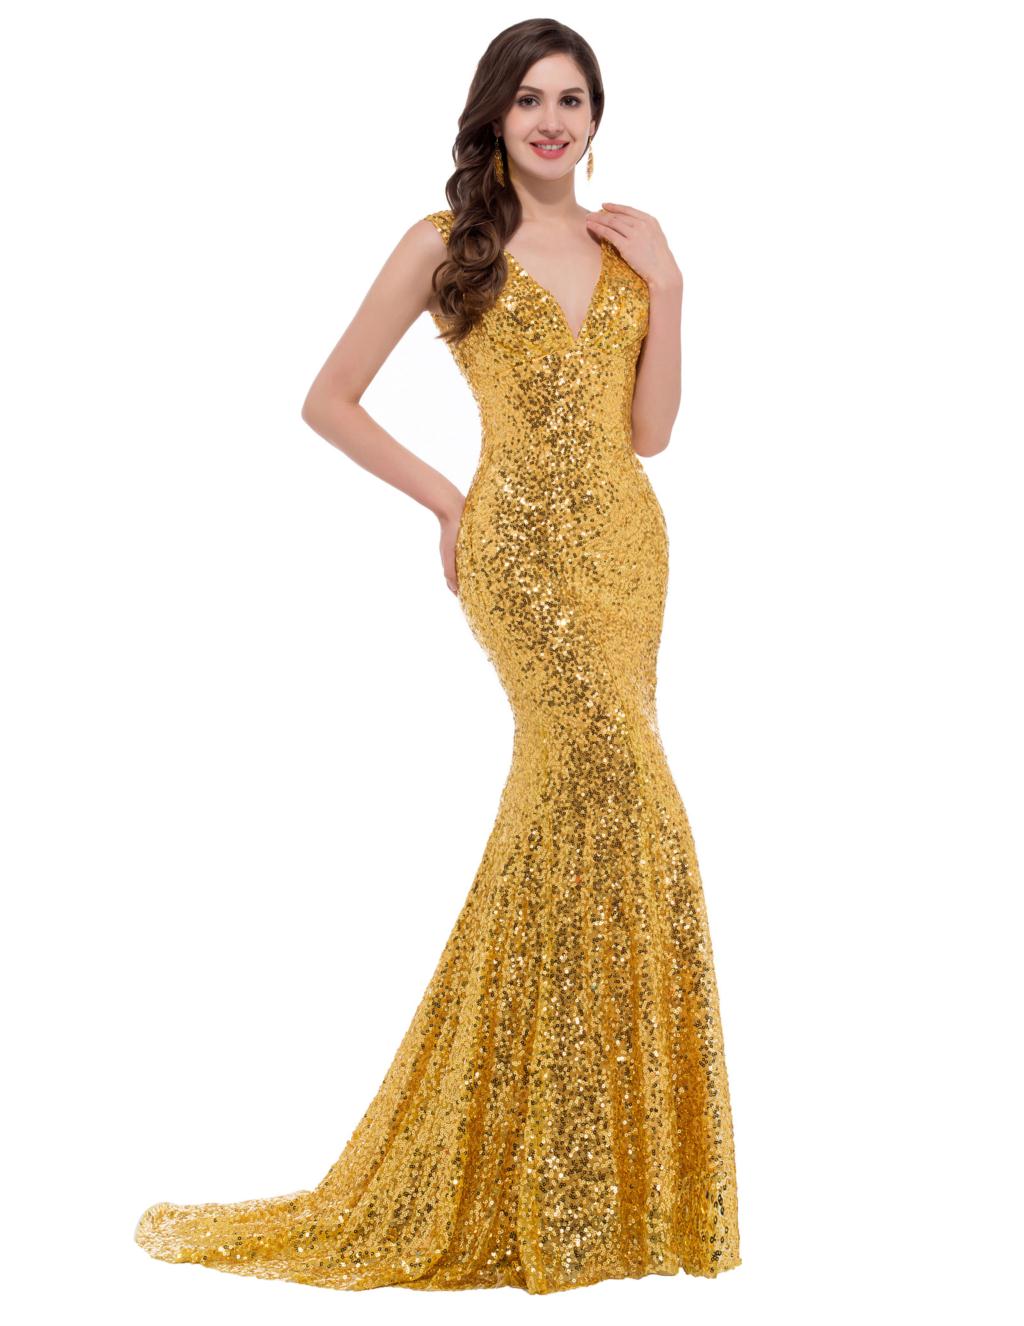 Bling Bling Gold Prom Dresses Long Prom Dress Mermaid Prom Gown V Neck Sequin Evening Dress Slim